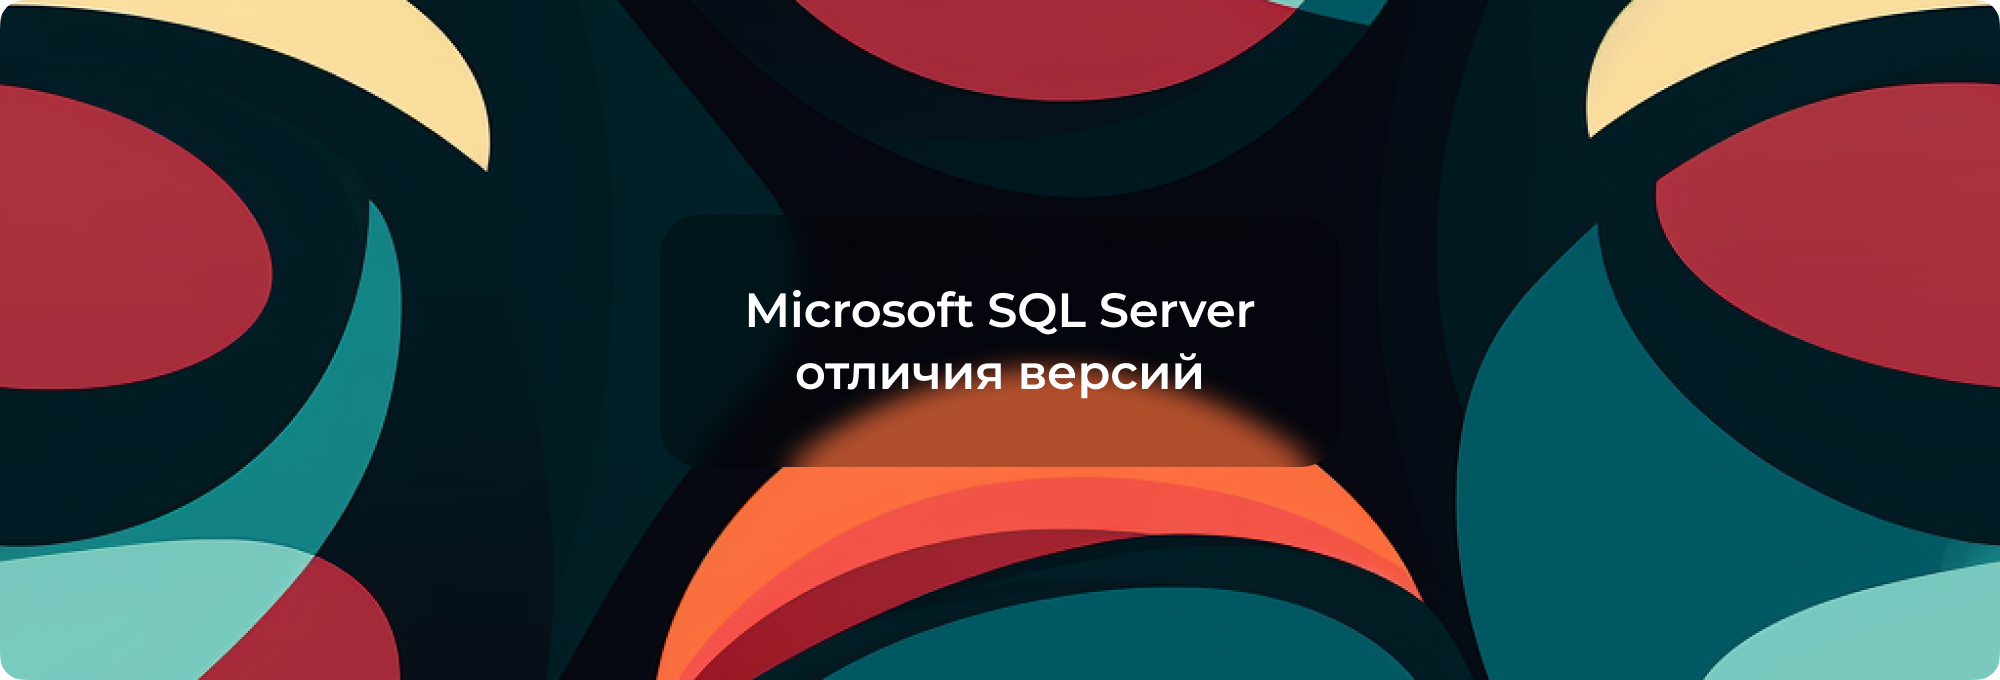 Microsoft SQL Server: эволюция, применение и особенности версий